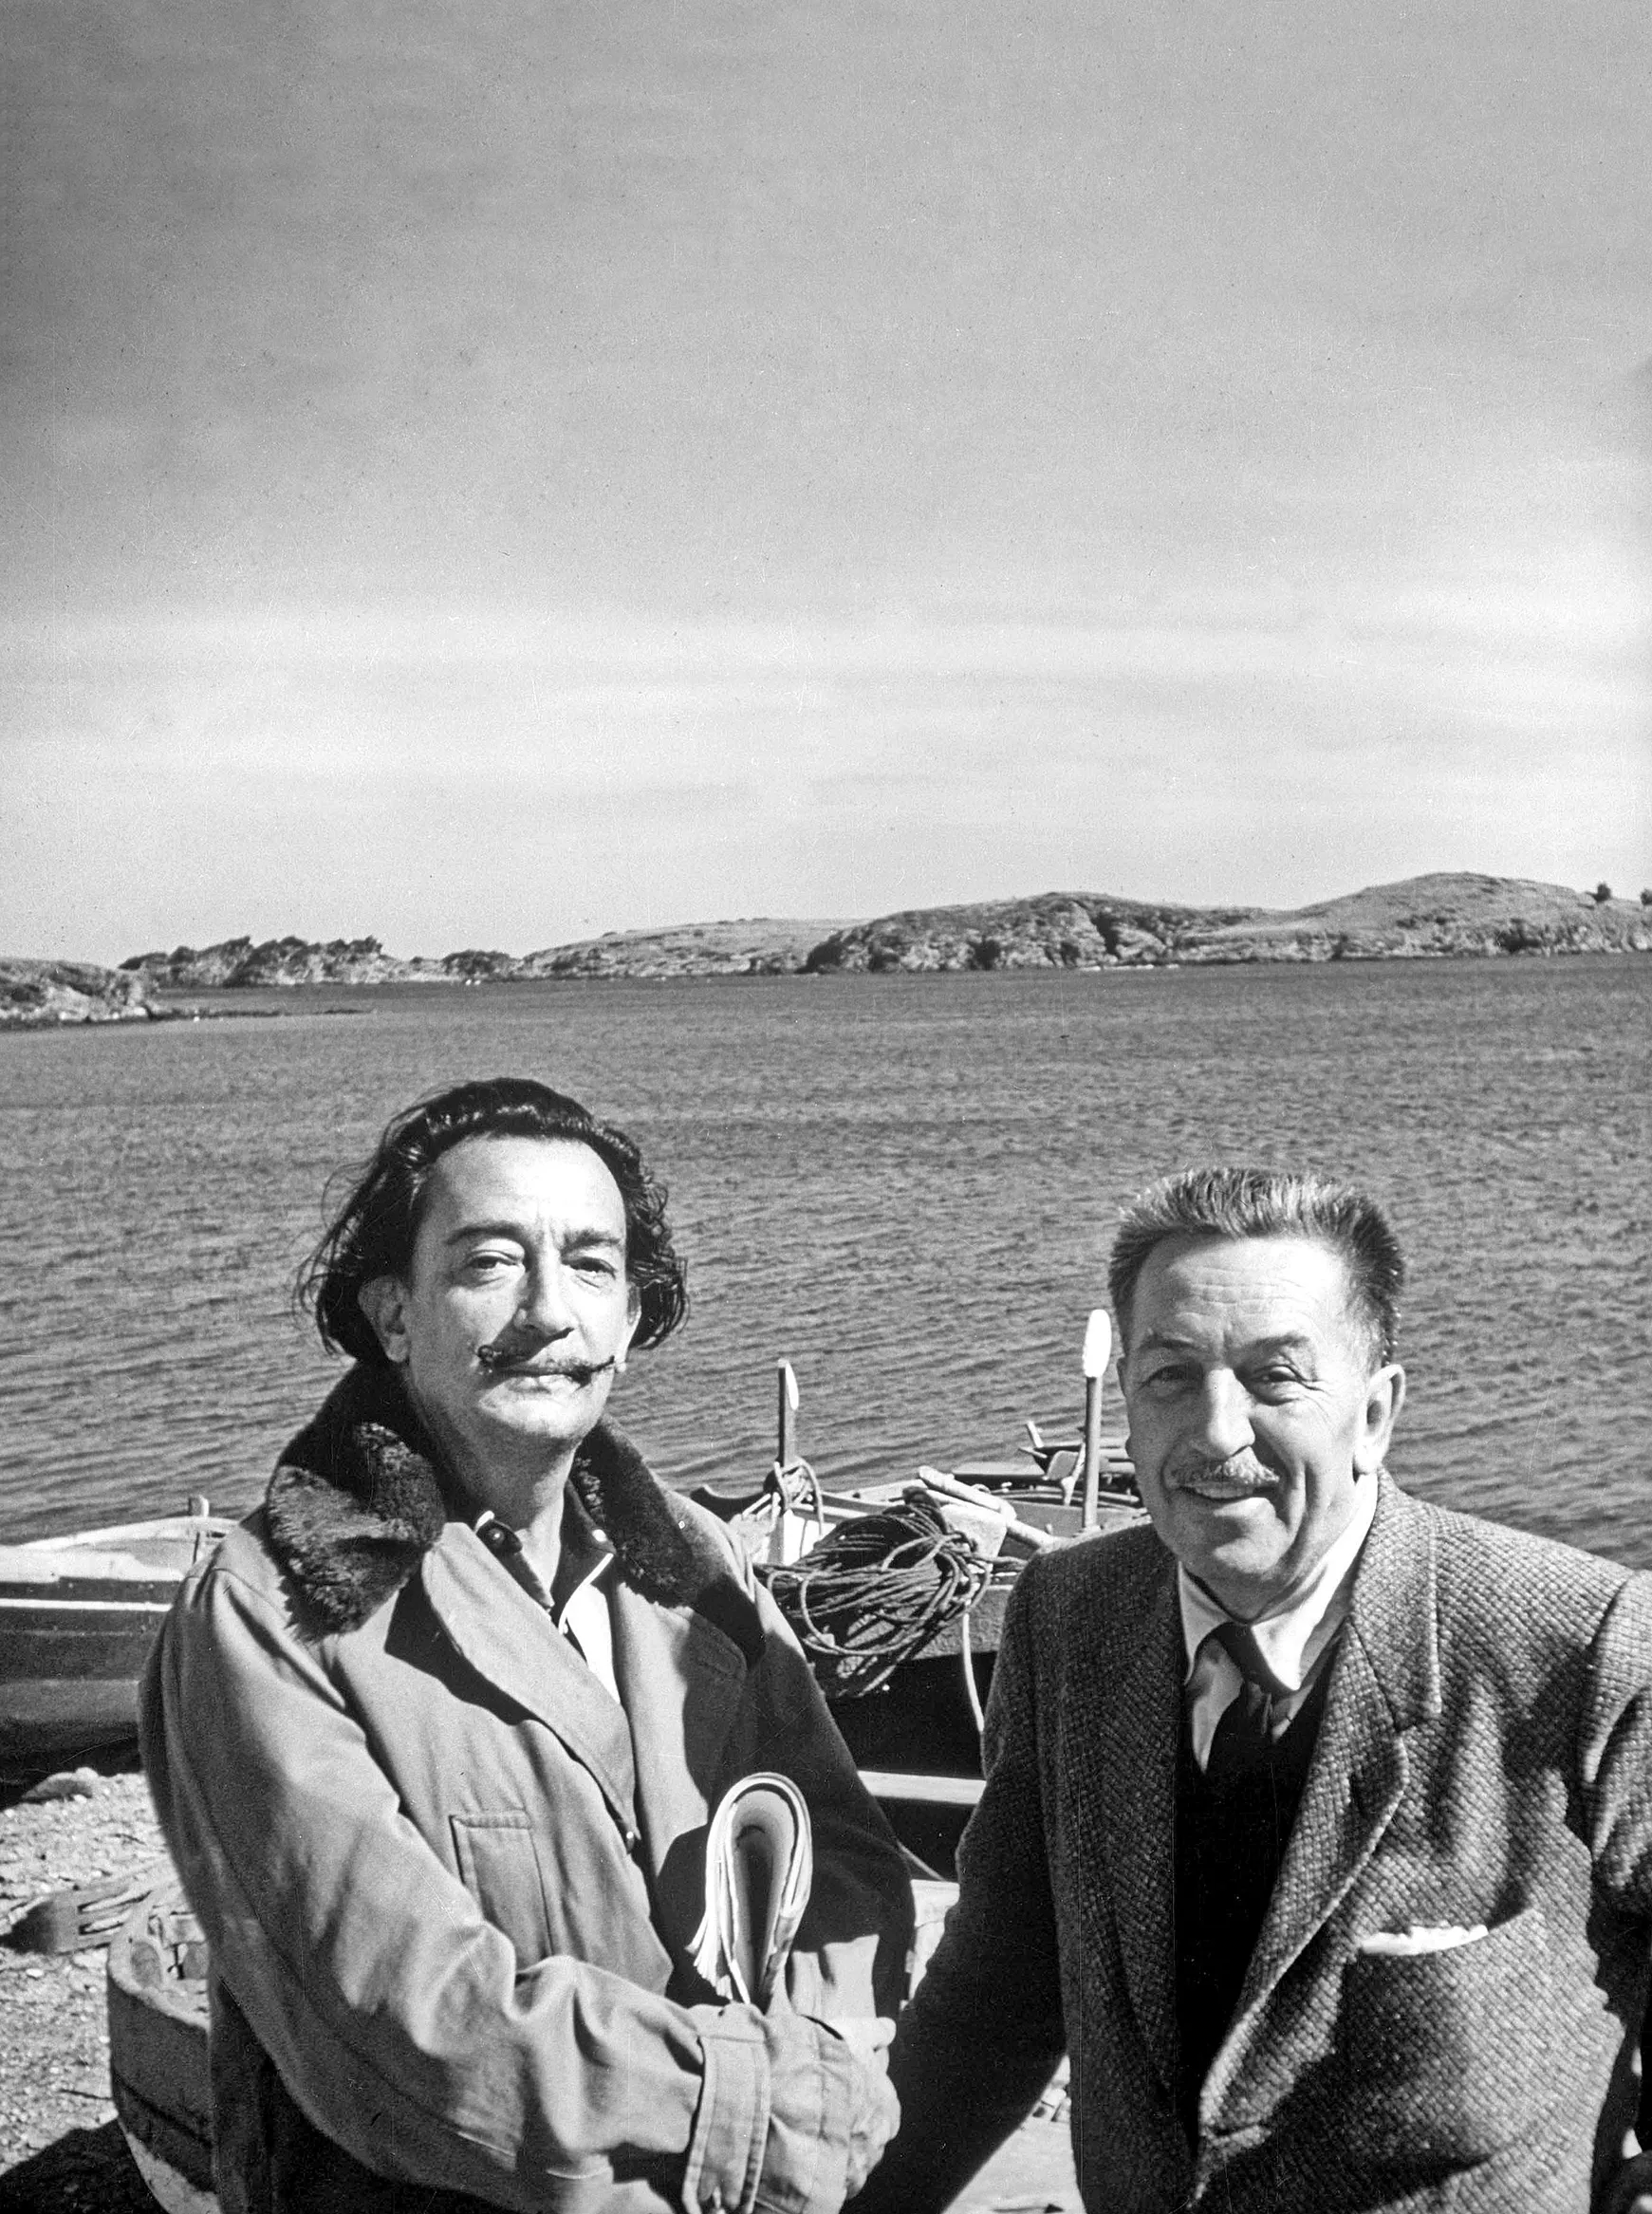 Disney i Dalí es van conèixer el 1945 en una festa a Hollywood. El 1957, el pintor el va convidar a Cadaqués